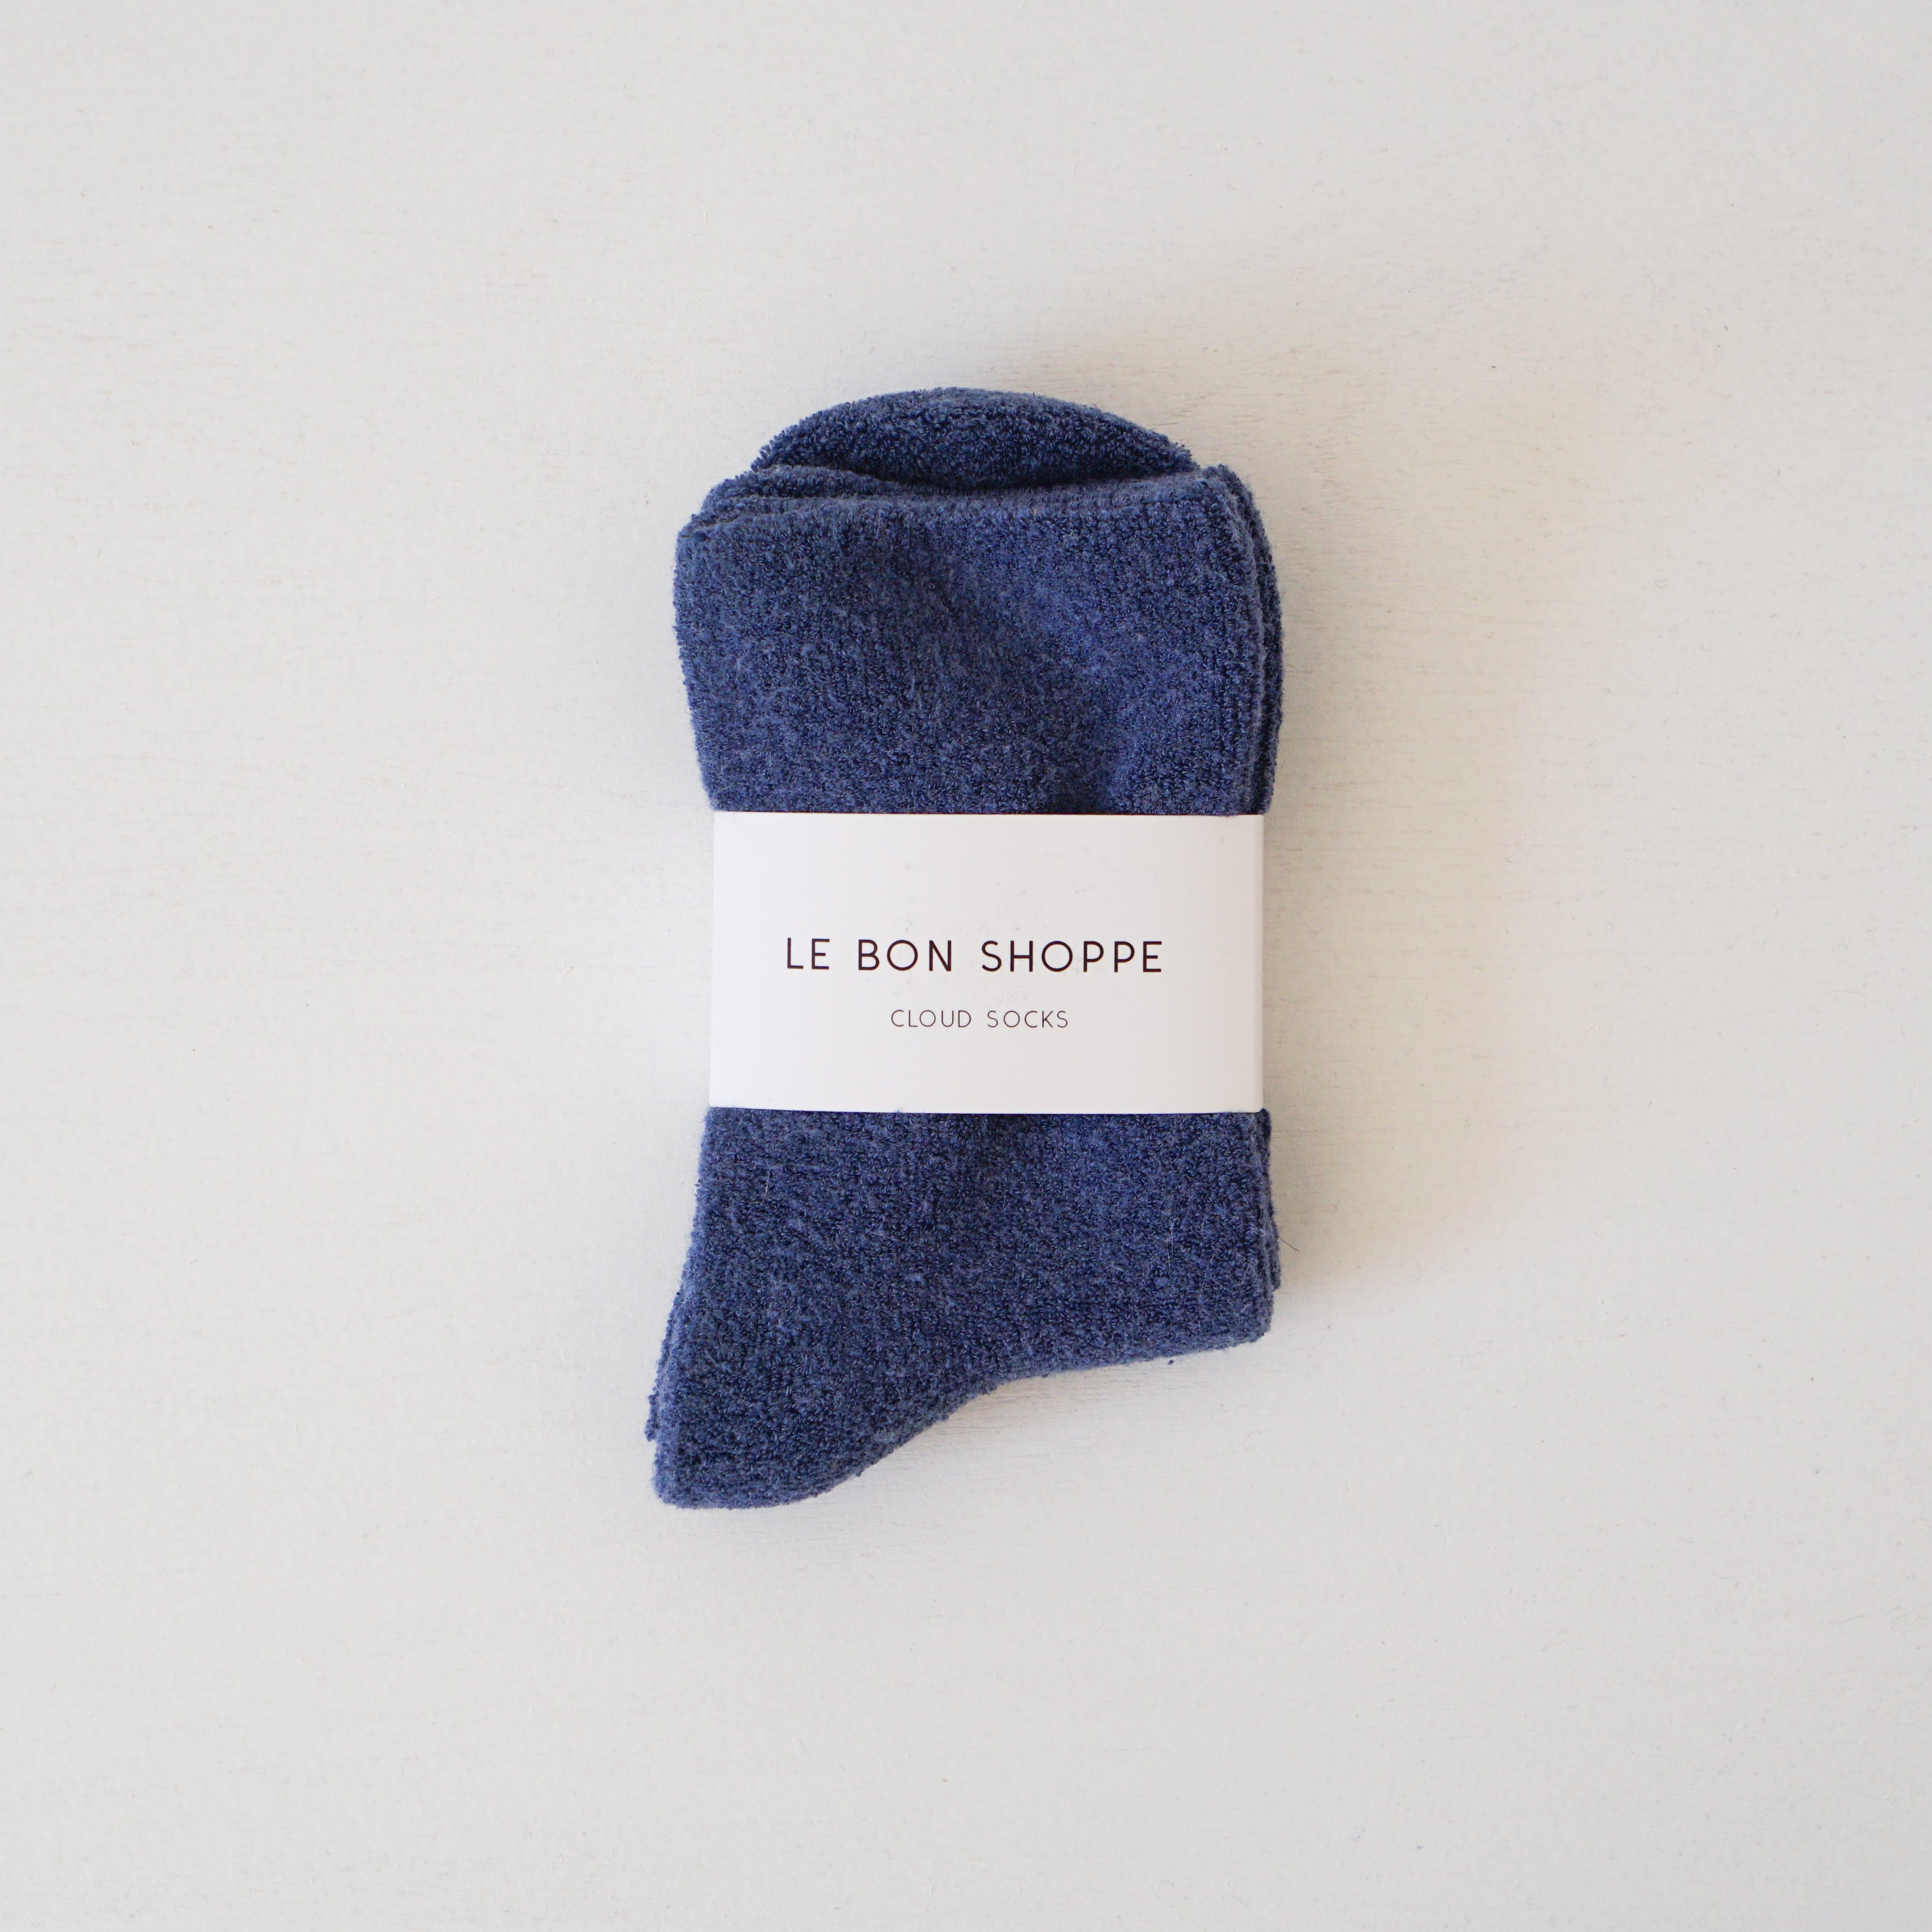 Le Bon Shoppe socks Bijou Blue Le Bon "Cloud" Socks